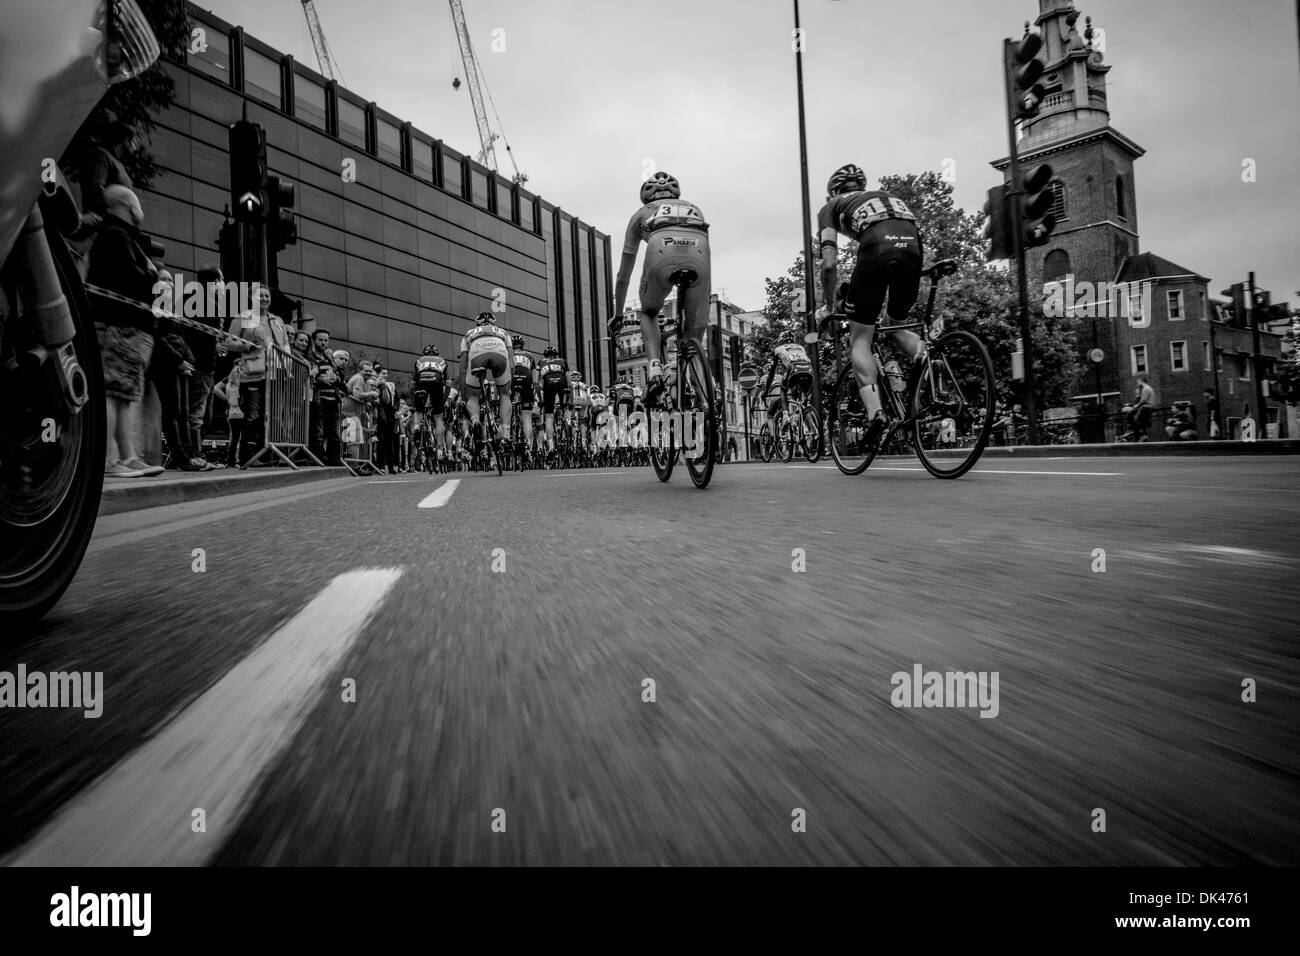 Letzte Etappe Tour of Britain 2013 Stockfoto